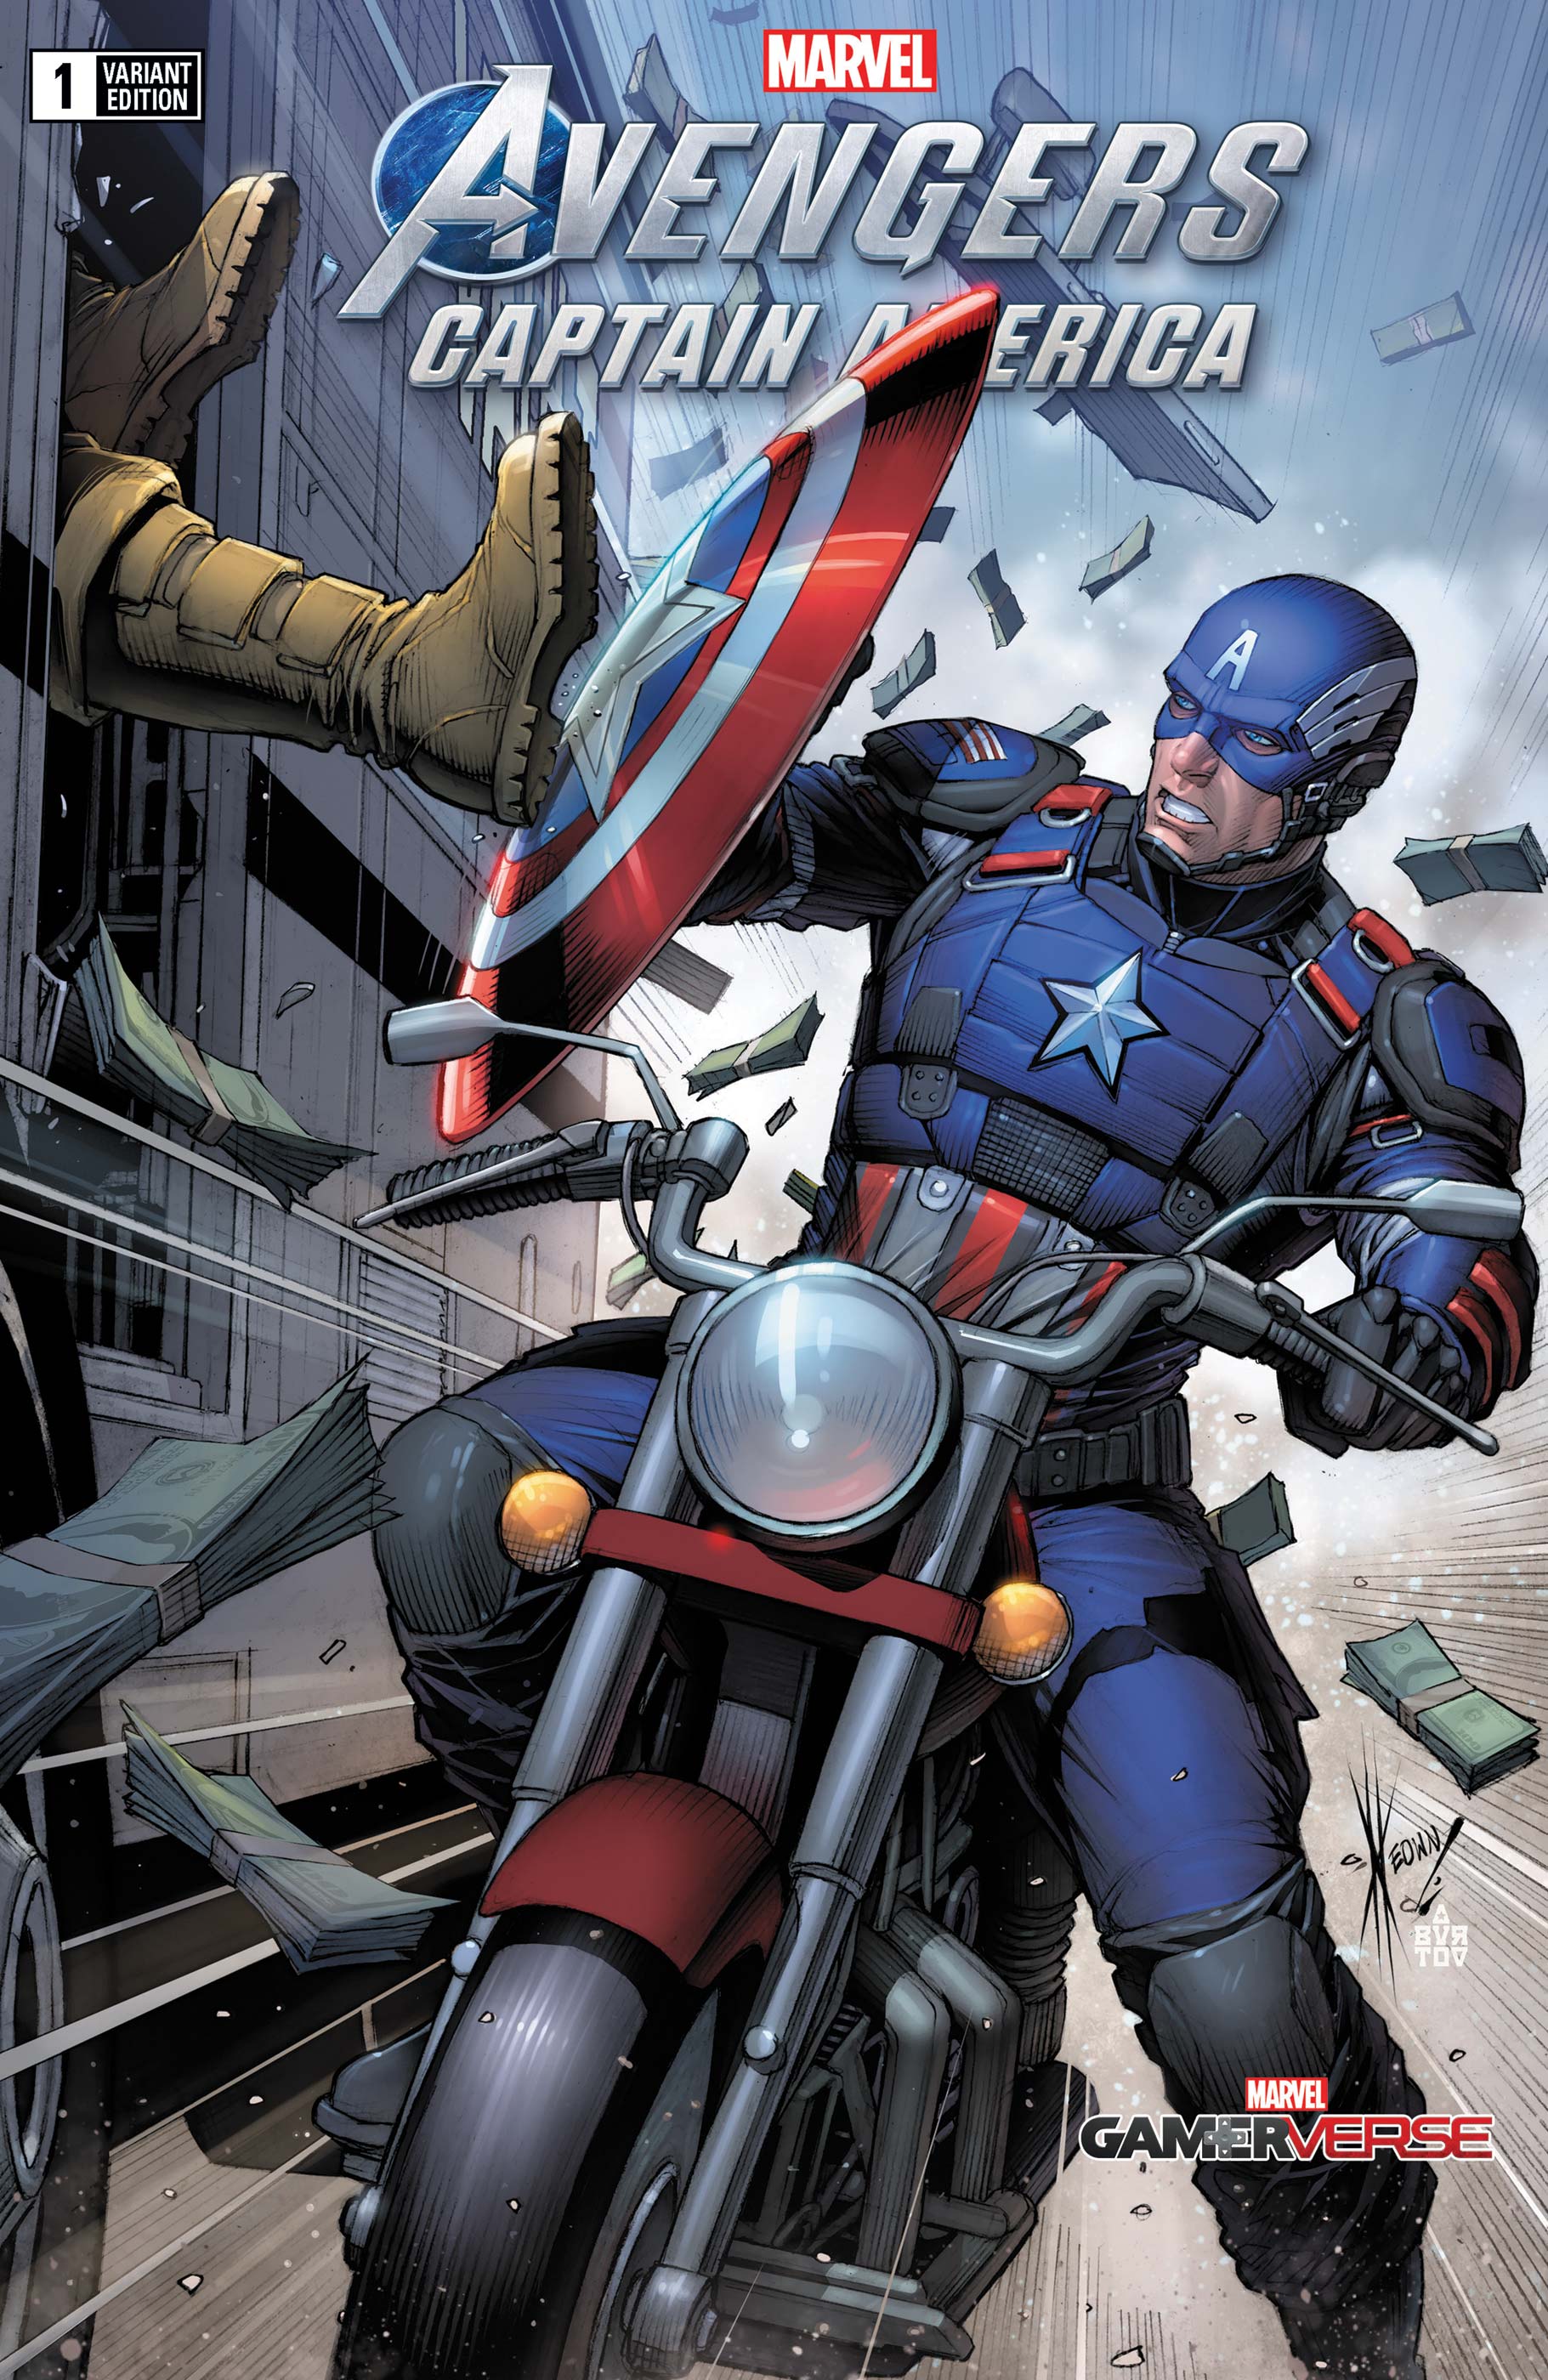 Marvels Avengers Captain America #1 Keown Variant